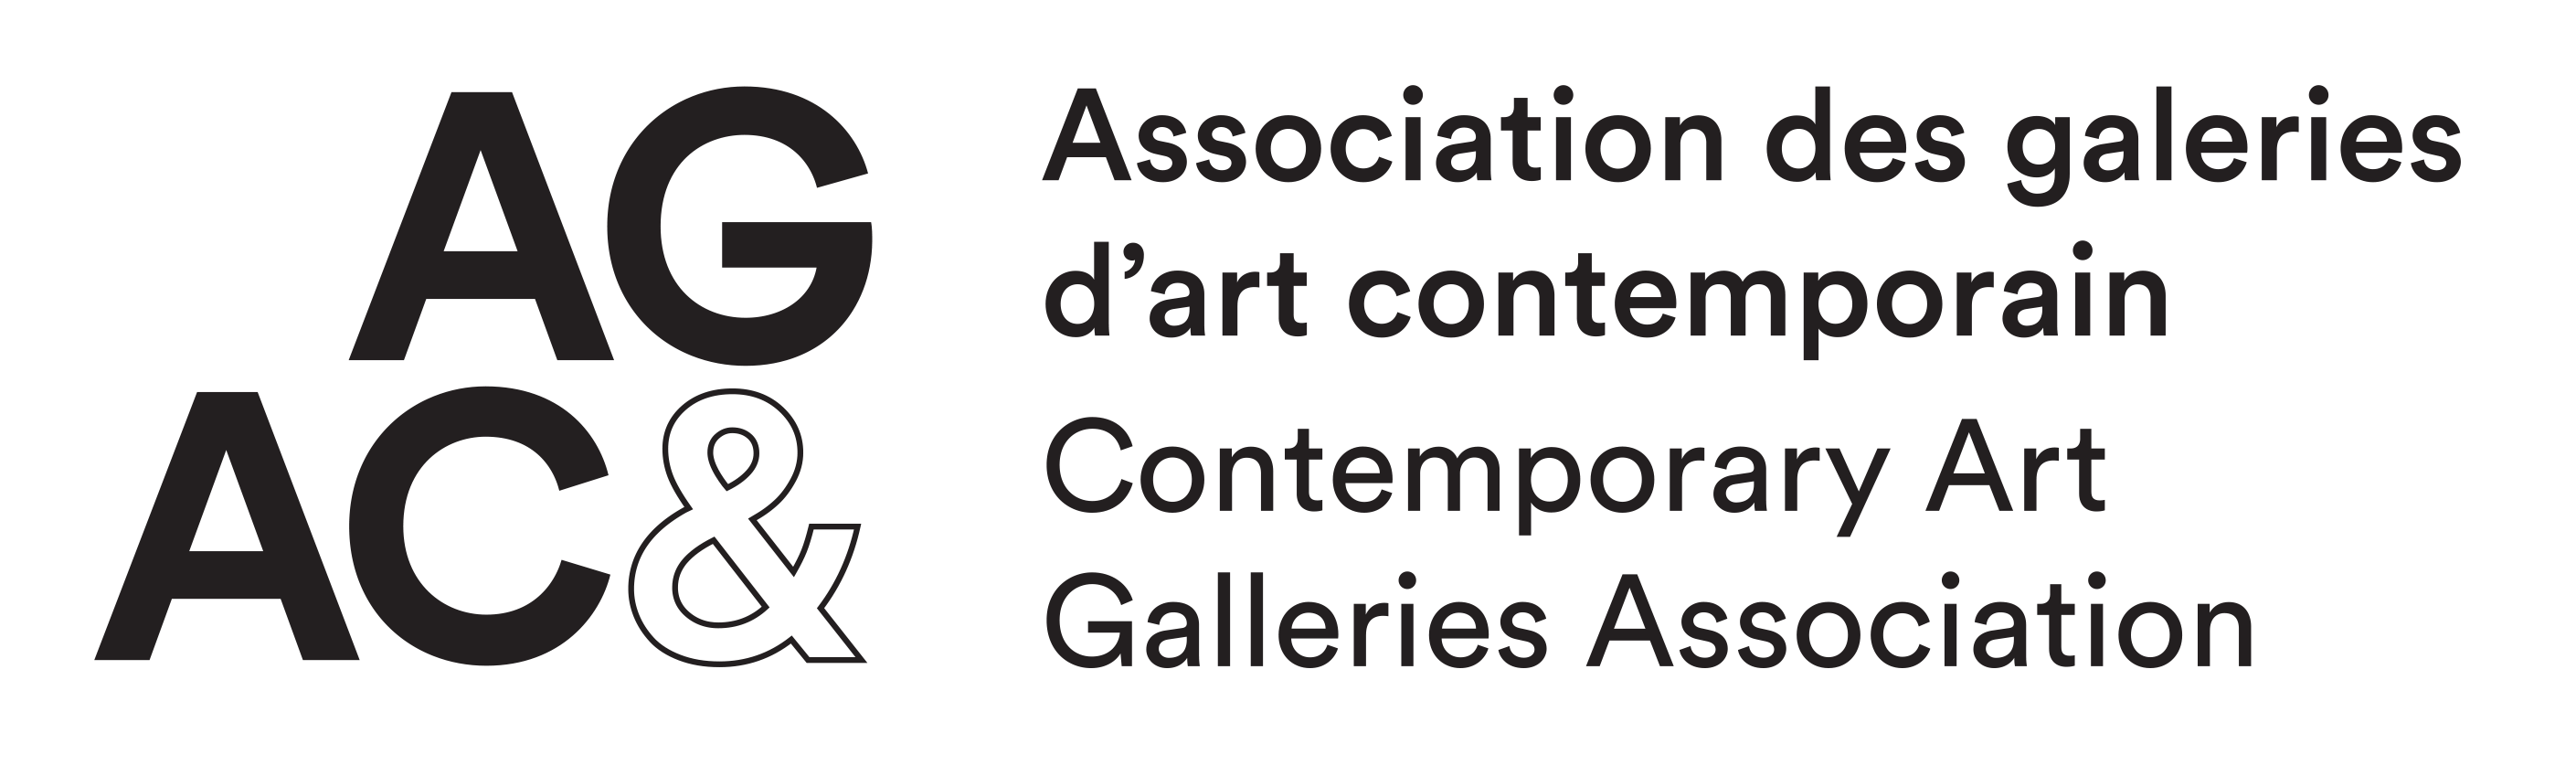 L’Association des galeries d’art contemporain